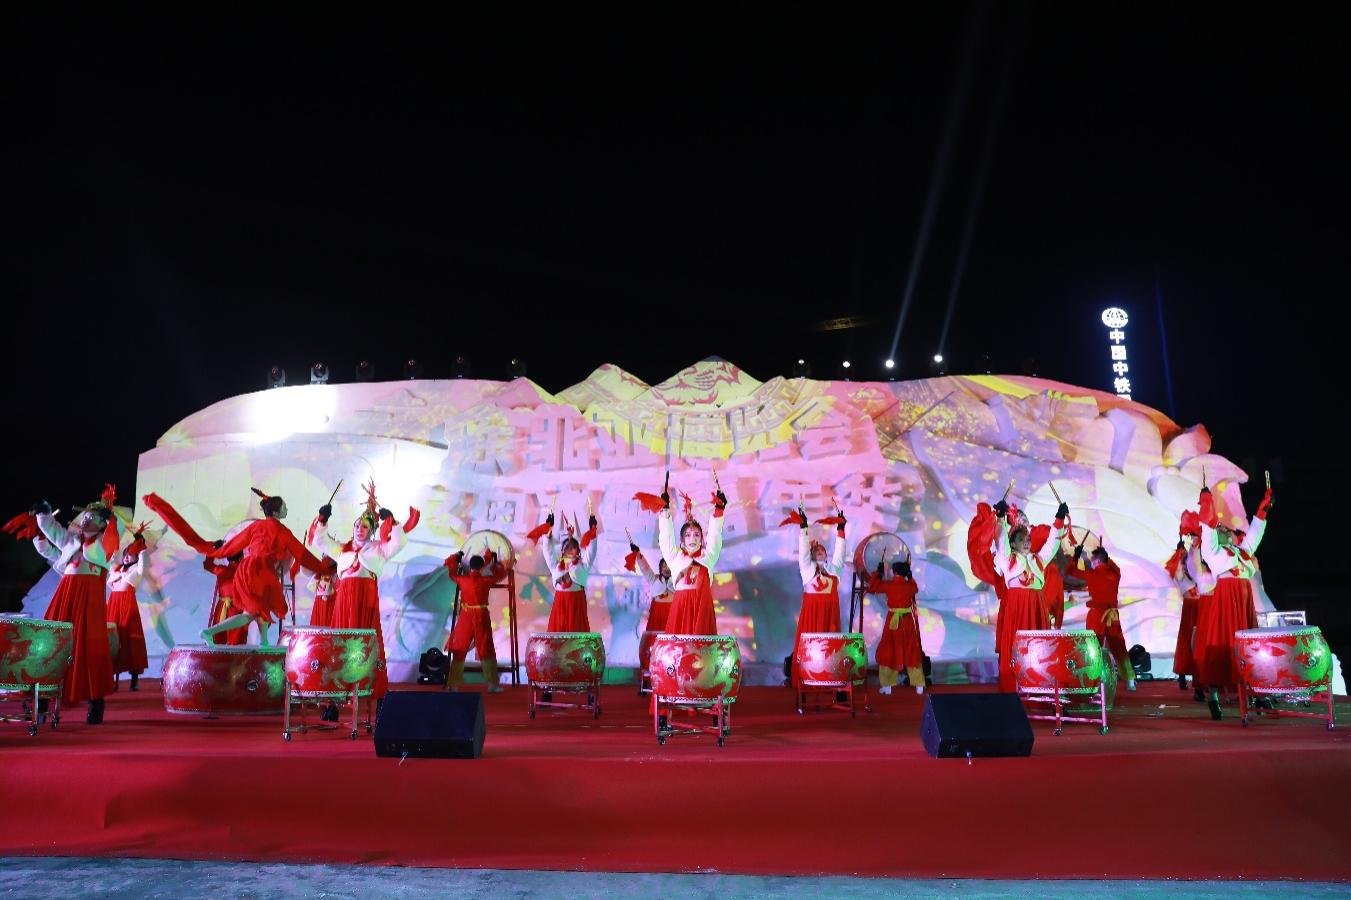 冰雪大惠民 欢乐博览城 东北亚博览会首届冬奥冰雪嘉年华在中铁·长春博览城举行